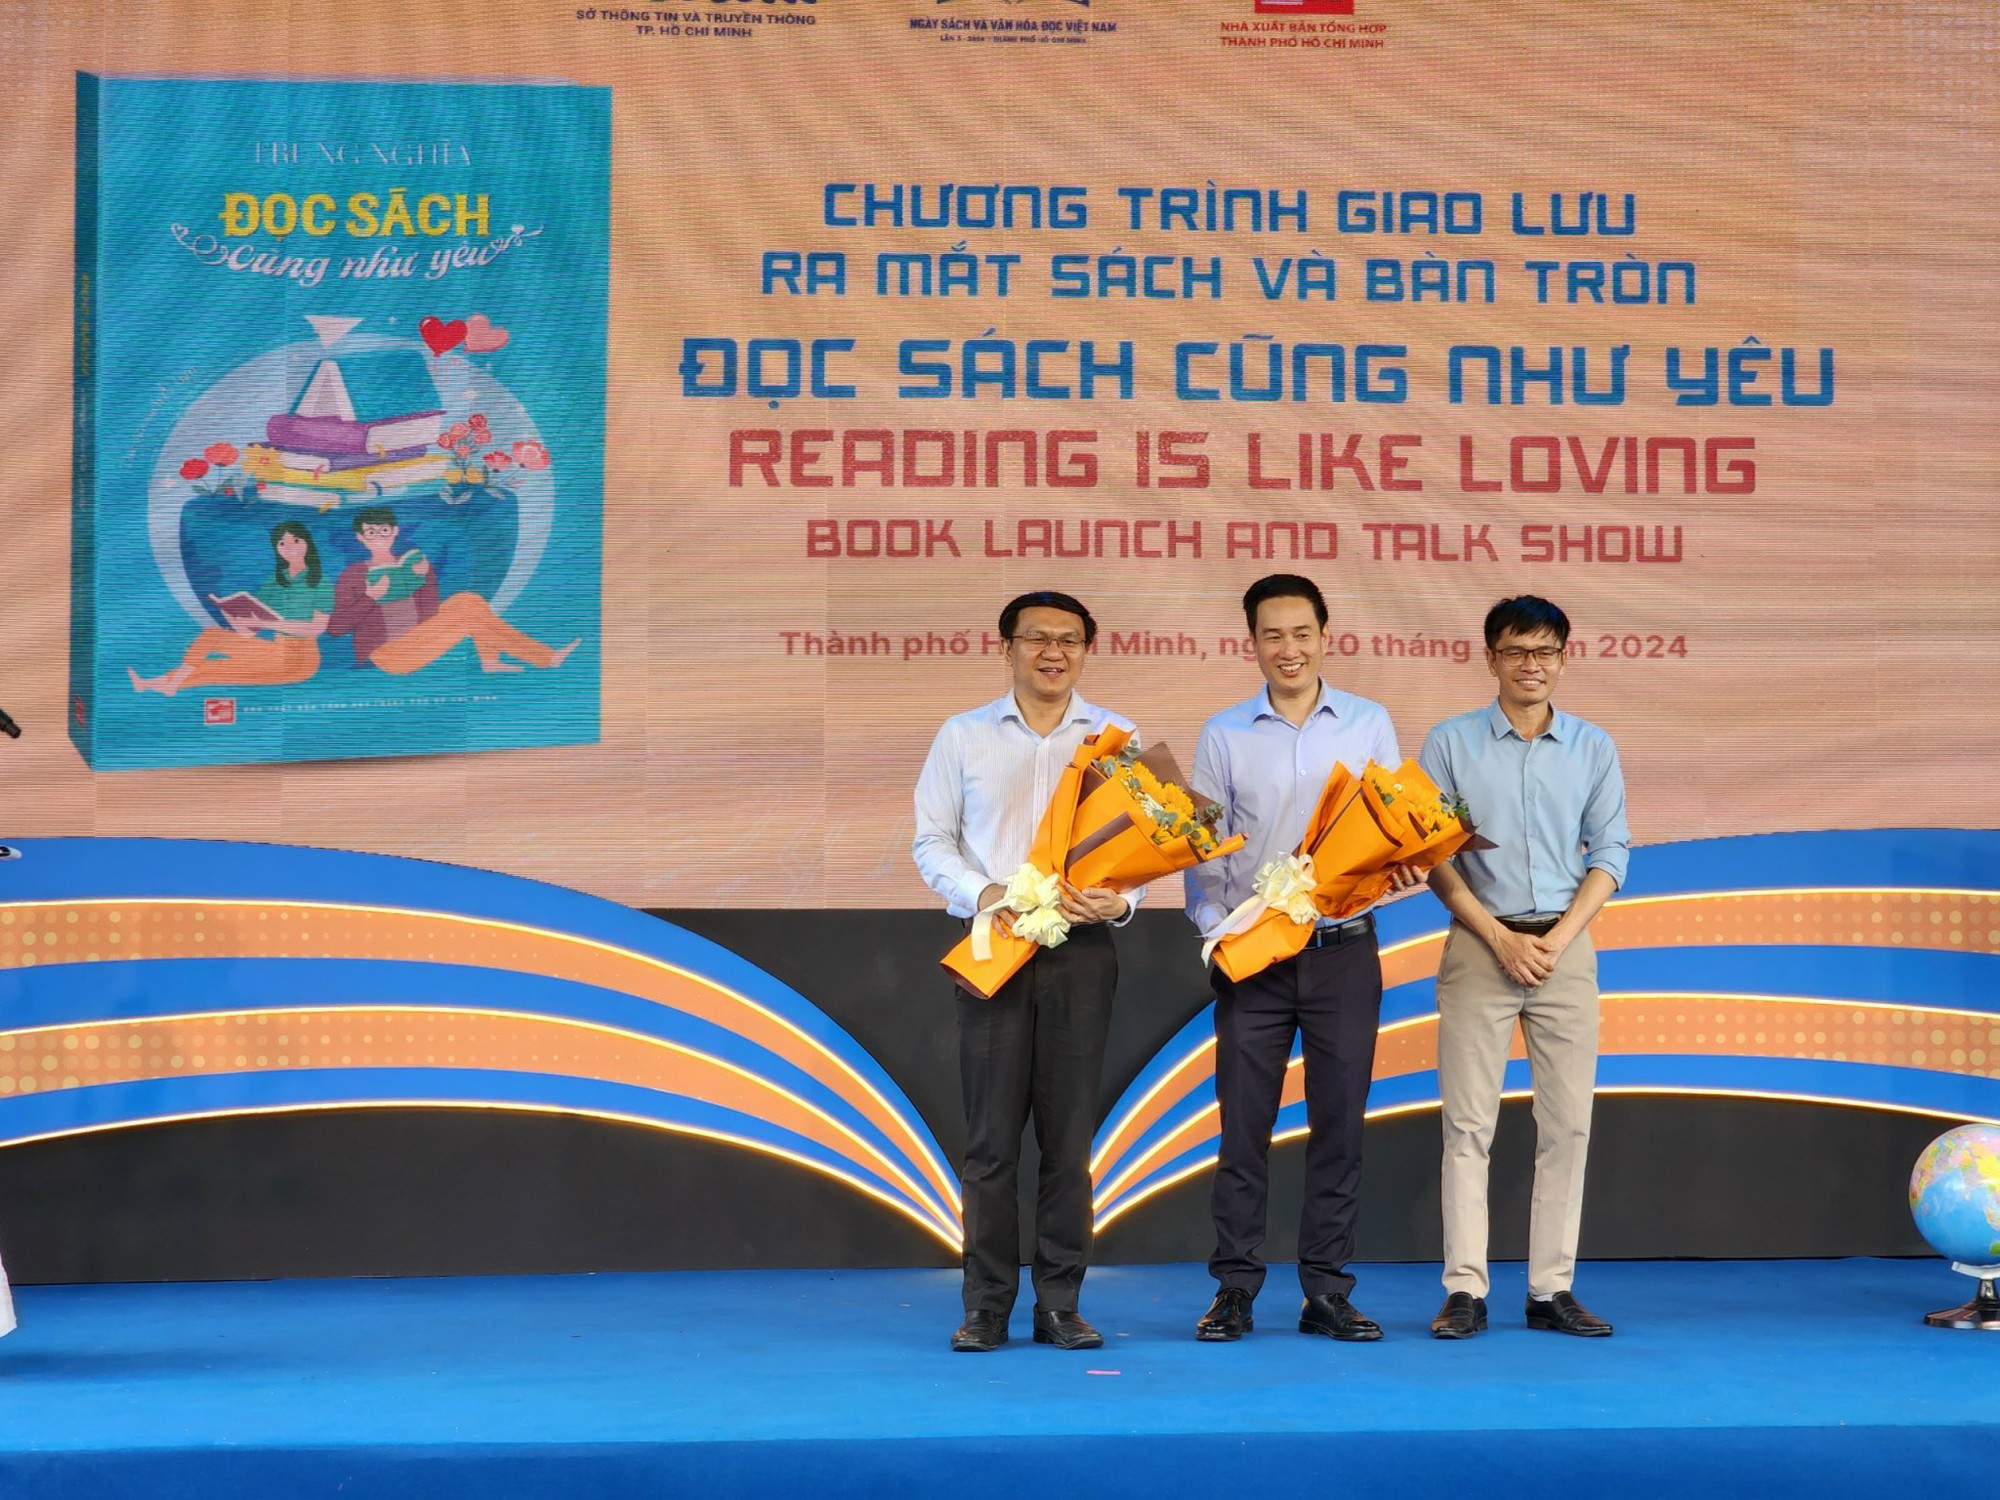 Đại sứ Văn hóa đọc của TP.HCM lan tỏa thông điệp về giá trị, ý nghĩa của sách - Ảnh 1.